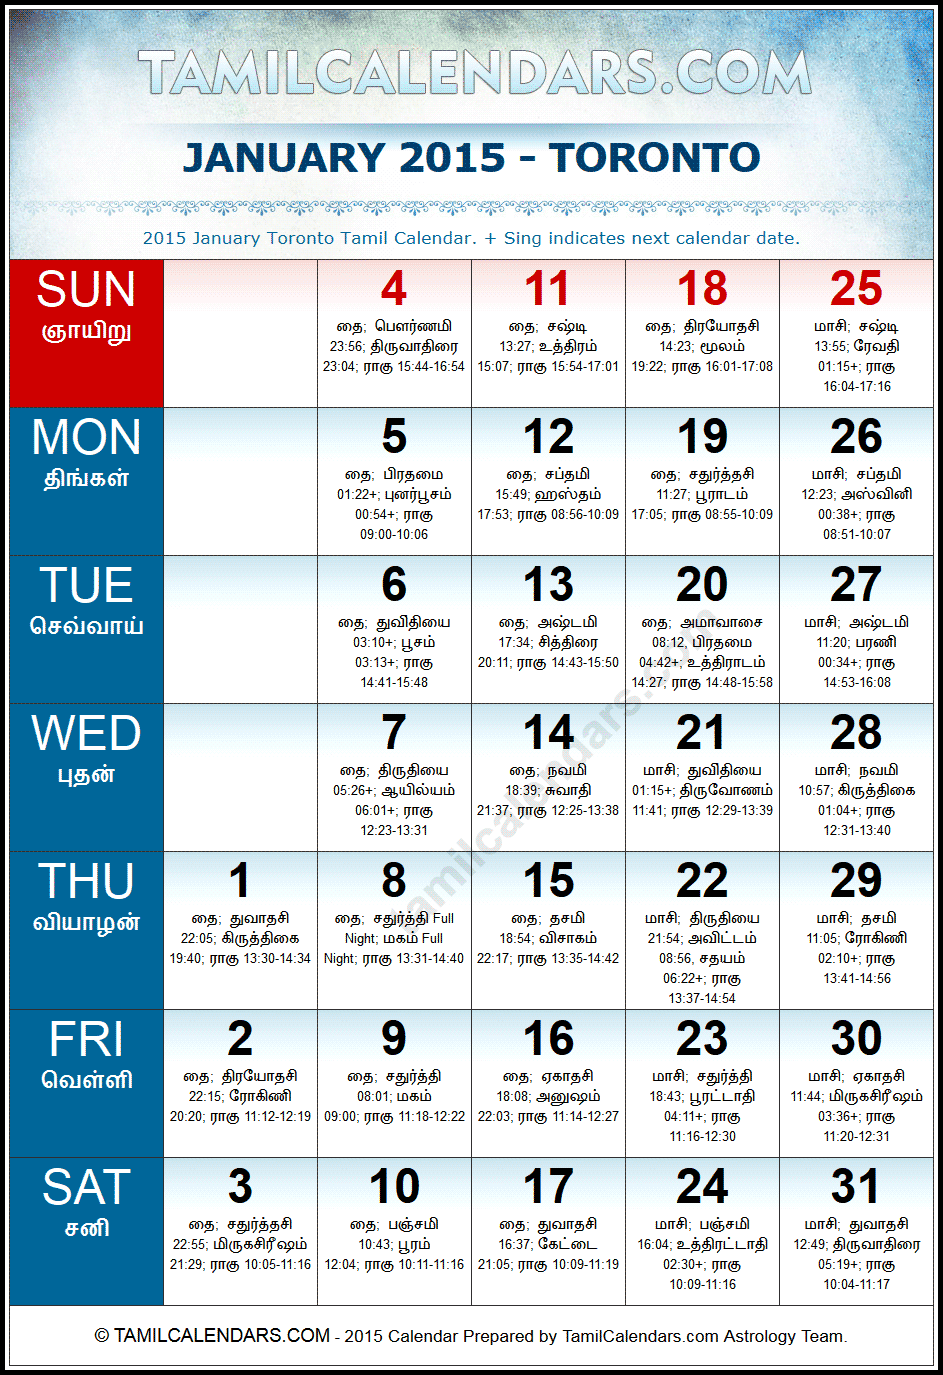 January 2015 Tamil Calendar for Toronto, Canada